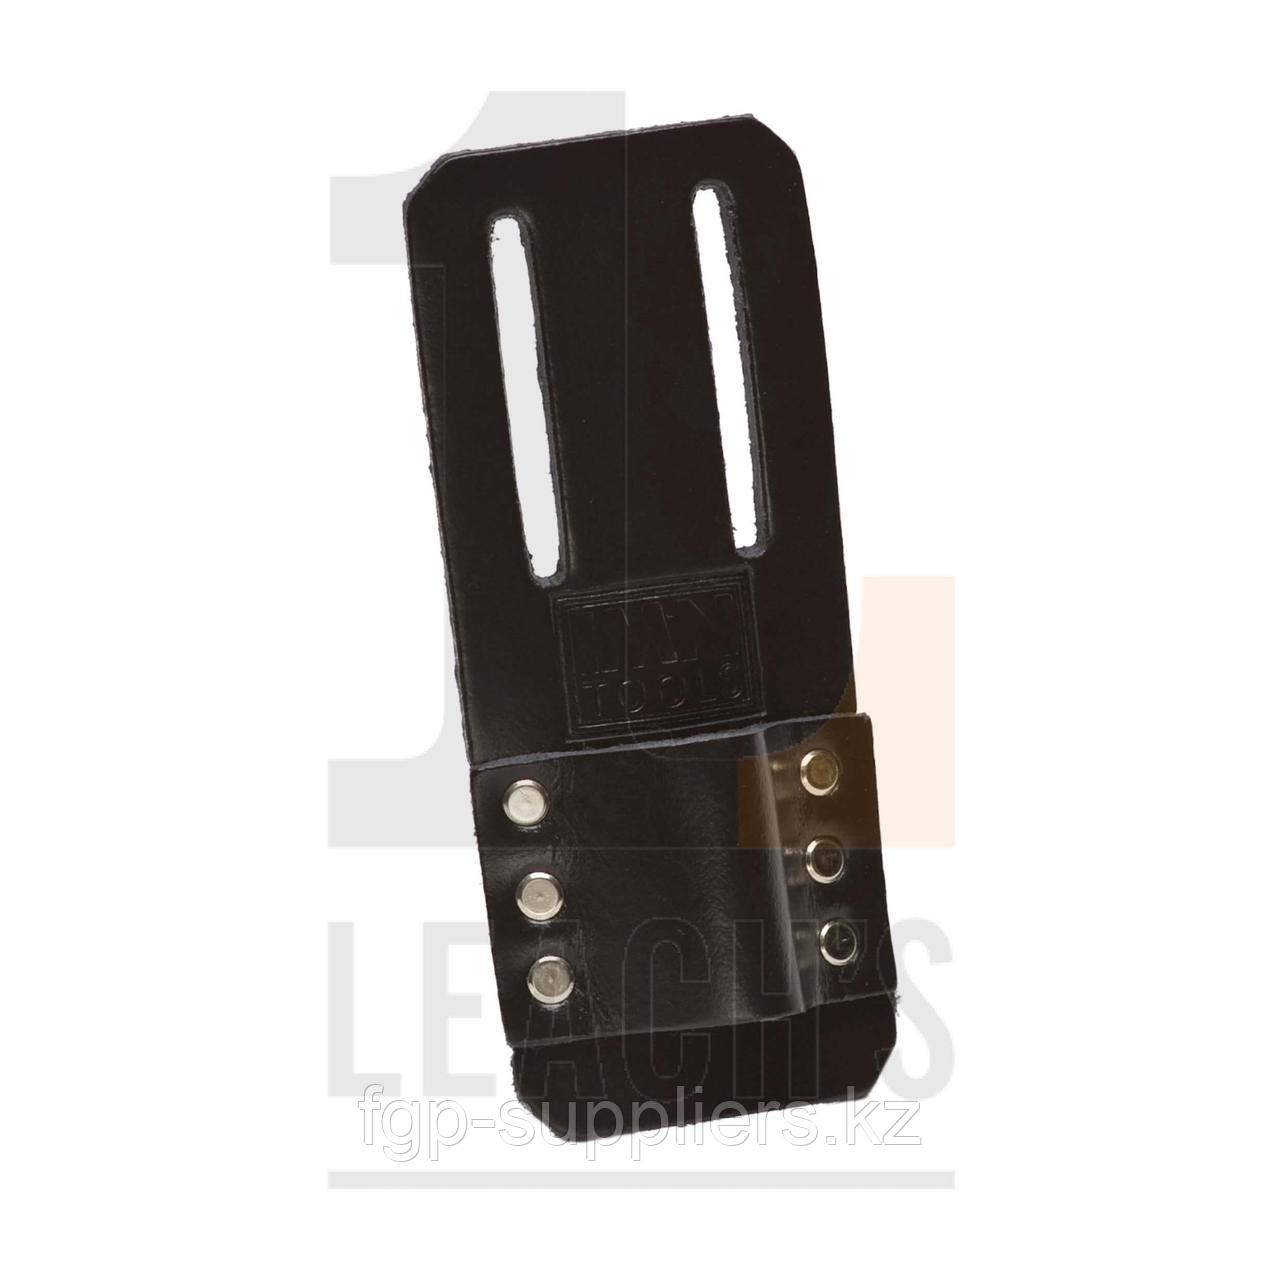 IMN Black Leather Single Loop Spanner Holder / IMN Держатель с одной петлей для гаечных ключей из черной кожи 